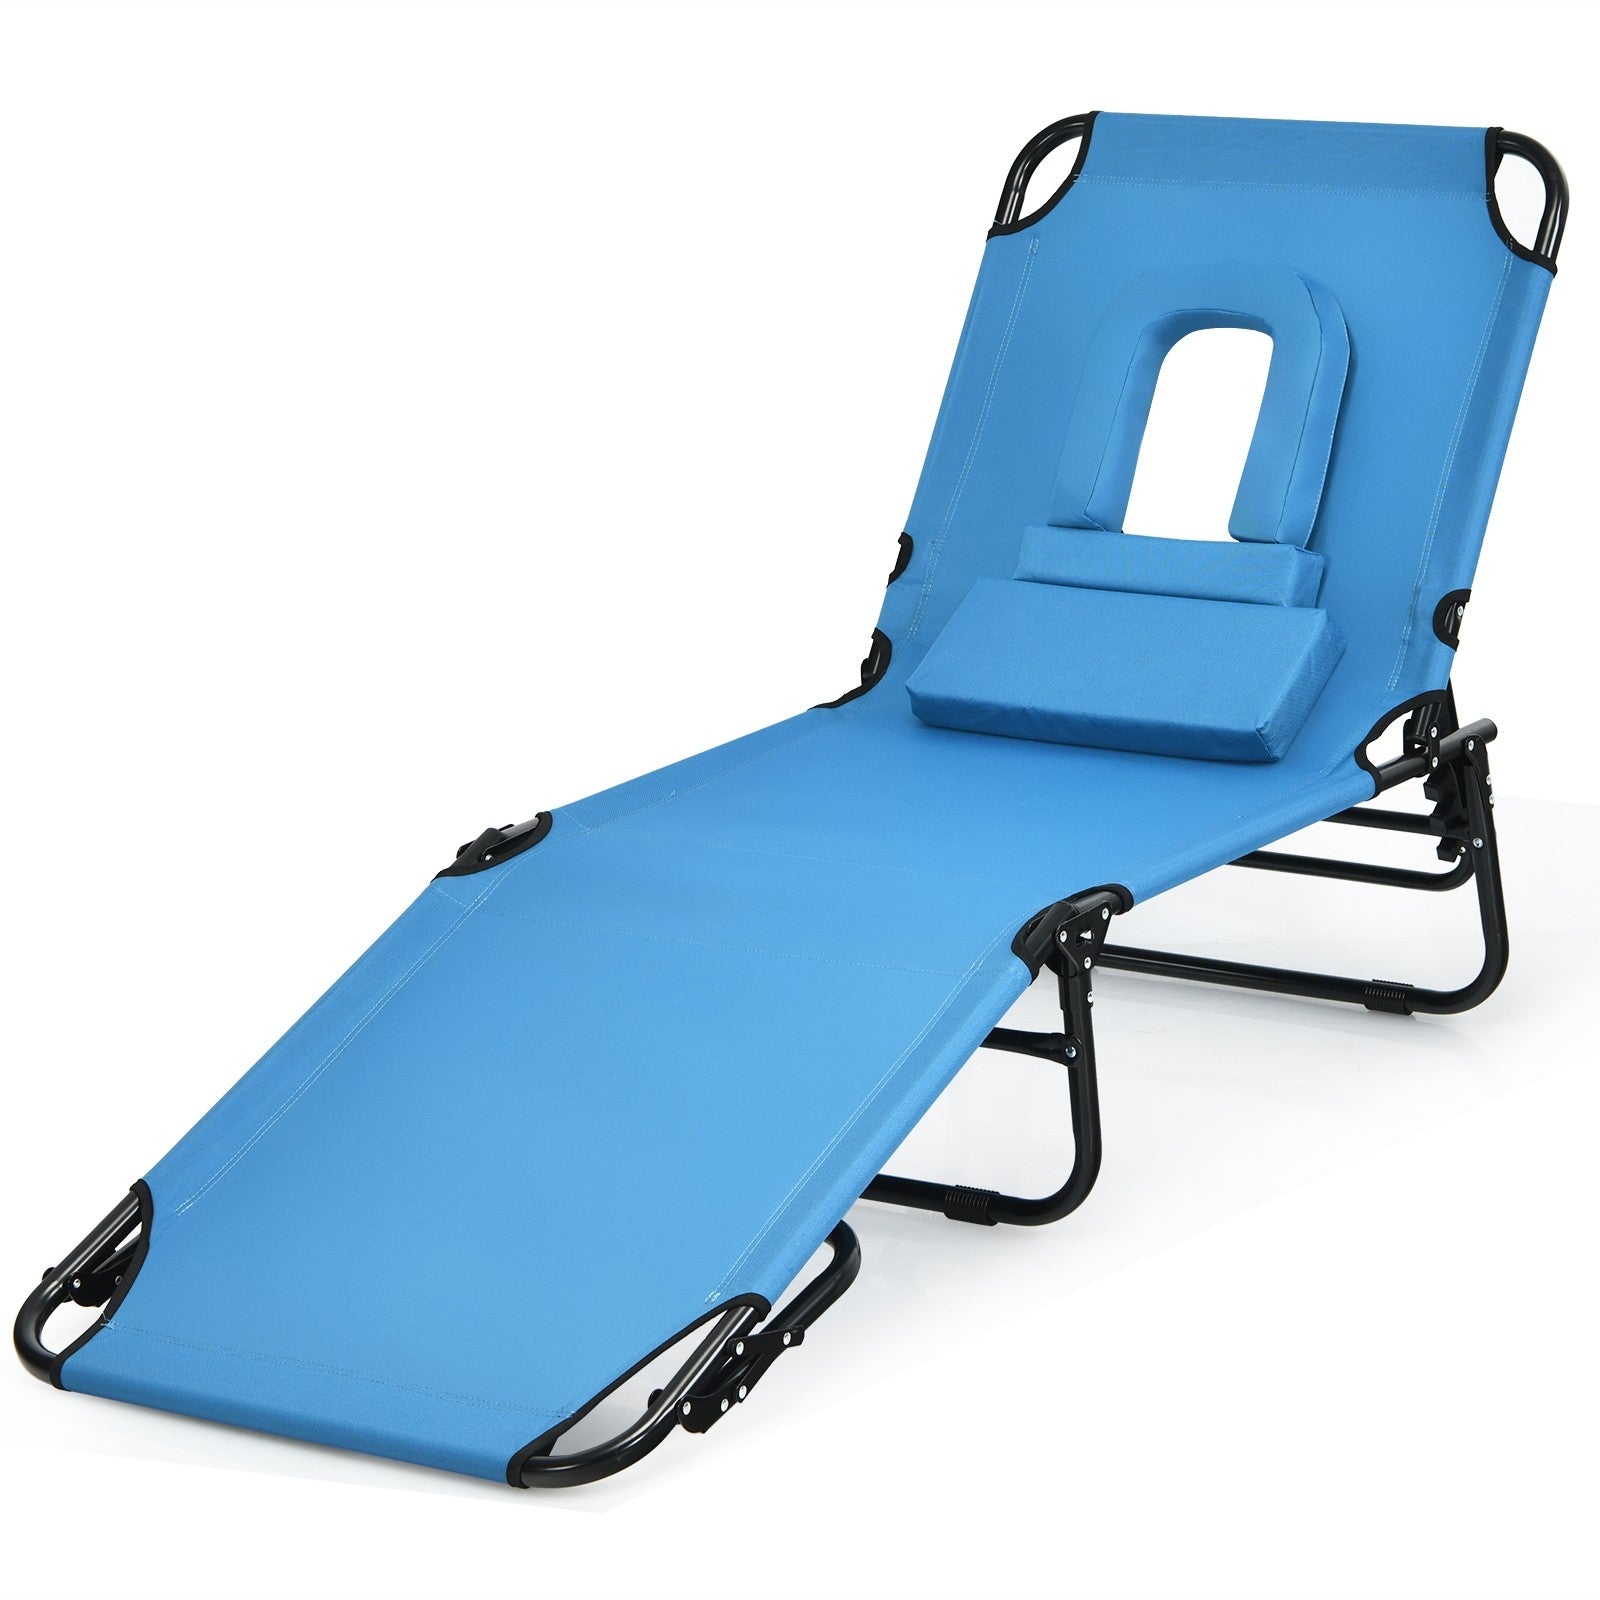 Beach Lounge Chair Chaise Lounge Chairs